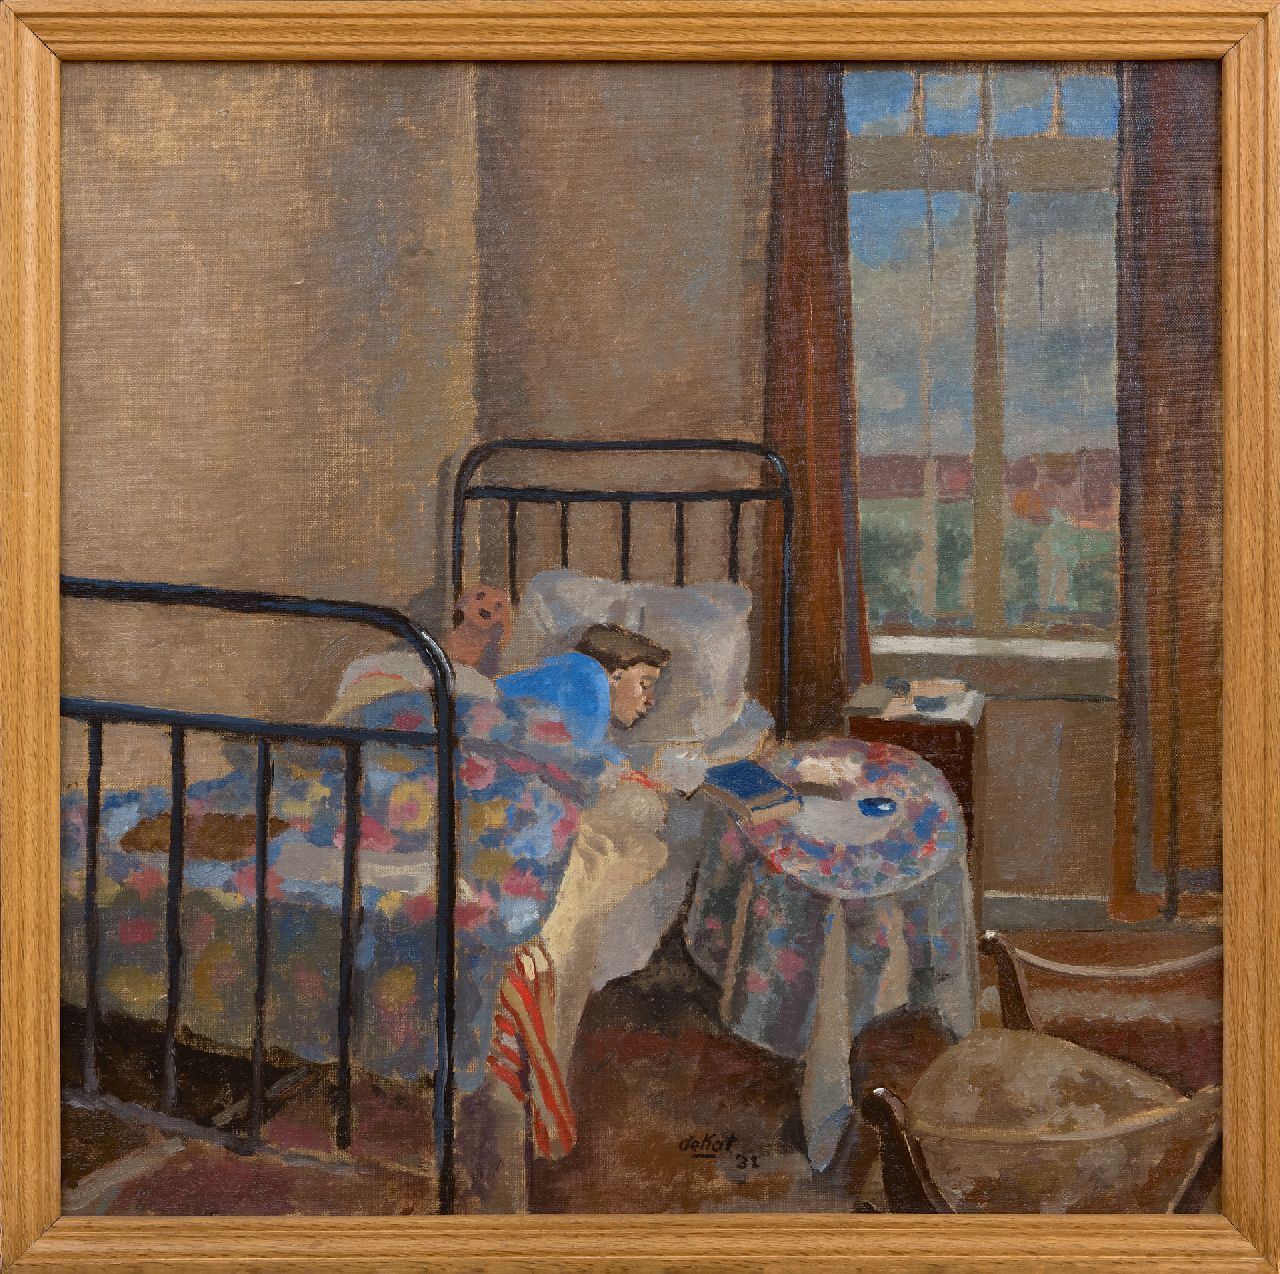 Kat O.B. de | 'Otto' Boudewijn de Kat | Schilderijen te koop aangeboden | Hans van Zijl, de vrouw van de kunstenaar, rustend, olieverf op doek 58,8 x 59,0 cm, gesigneerd middenonder en gedateerd '32